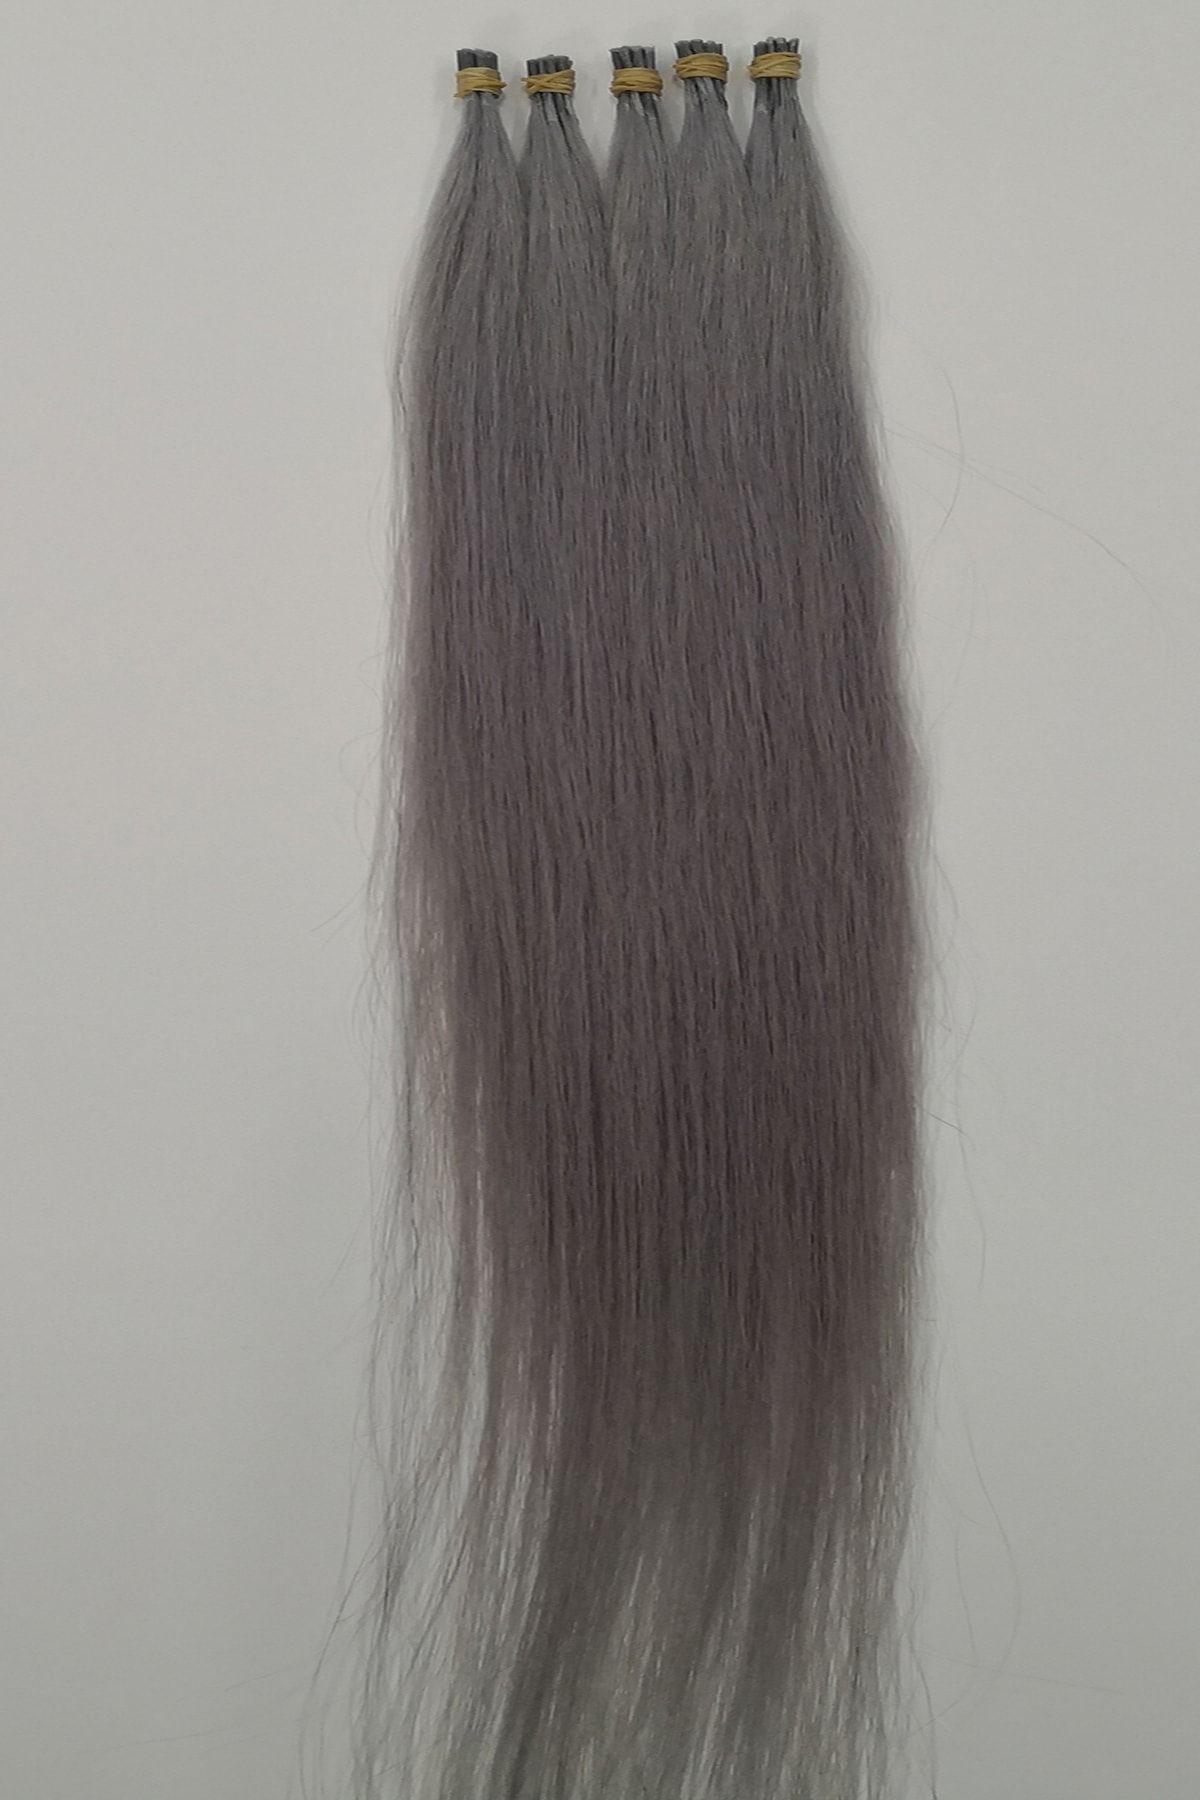 HalitCan HairKing %100 Doğal Gerçek Insan Saçı Renkli (GRİ) Saçlar (70 CM) Boncuk Kaynak